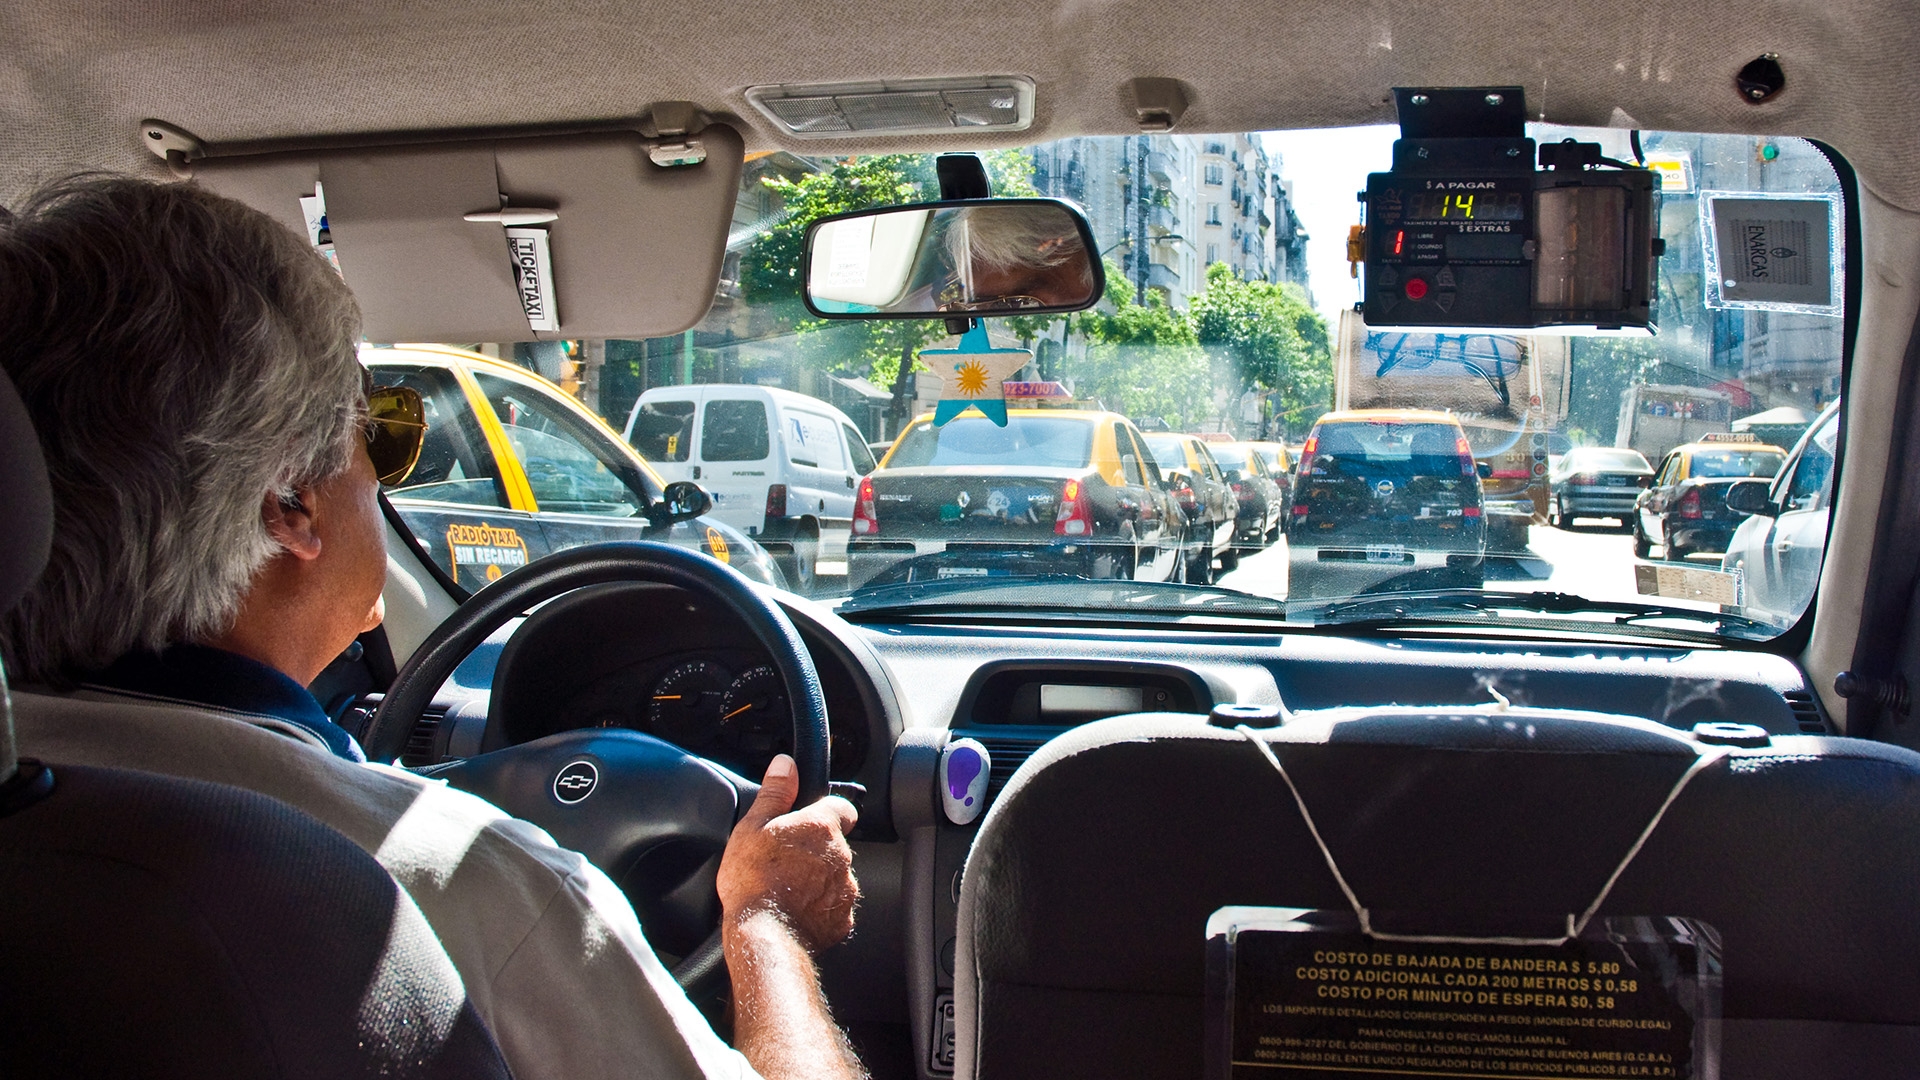 Услуги такси в Ламассоле и их стоимость